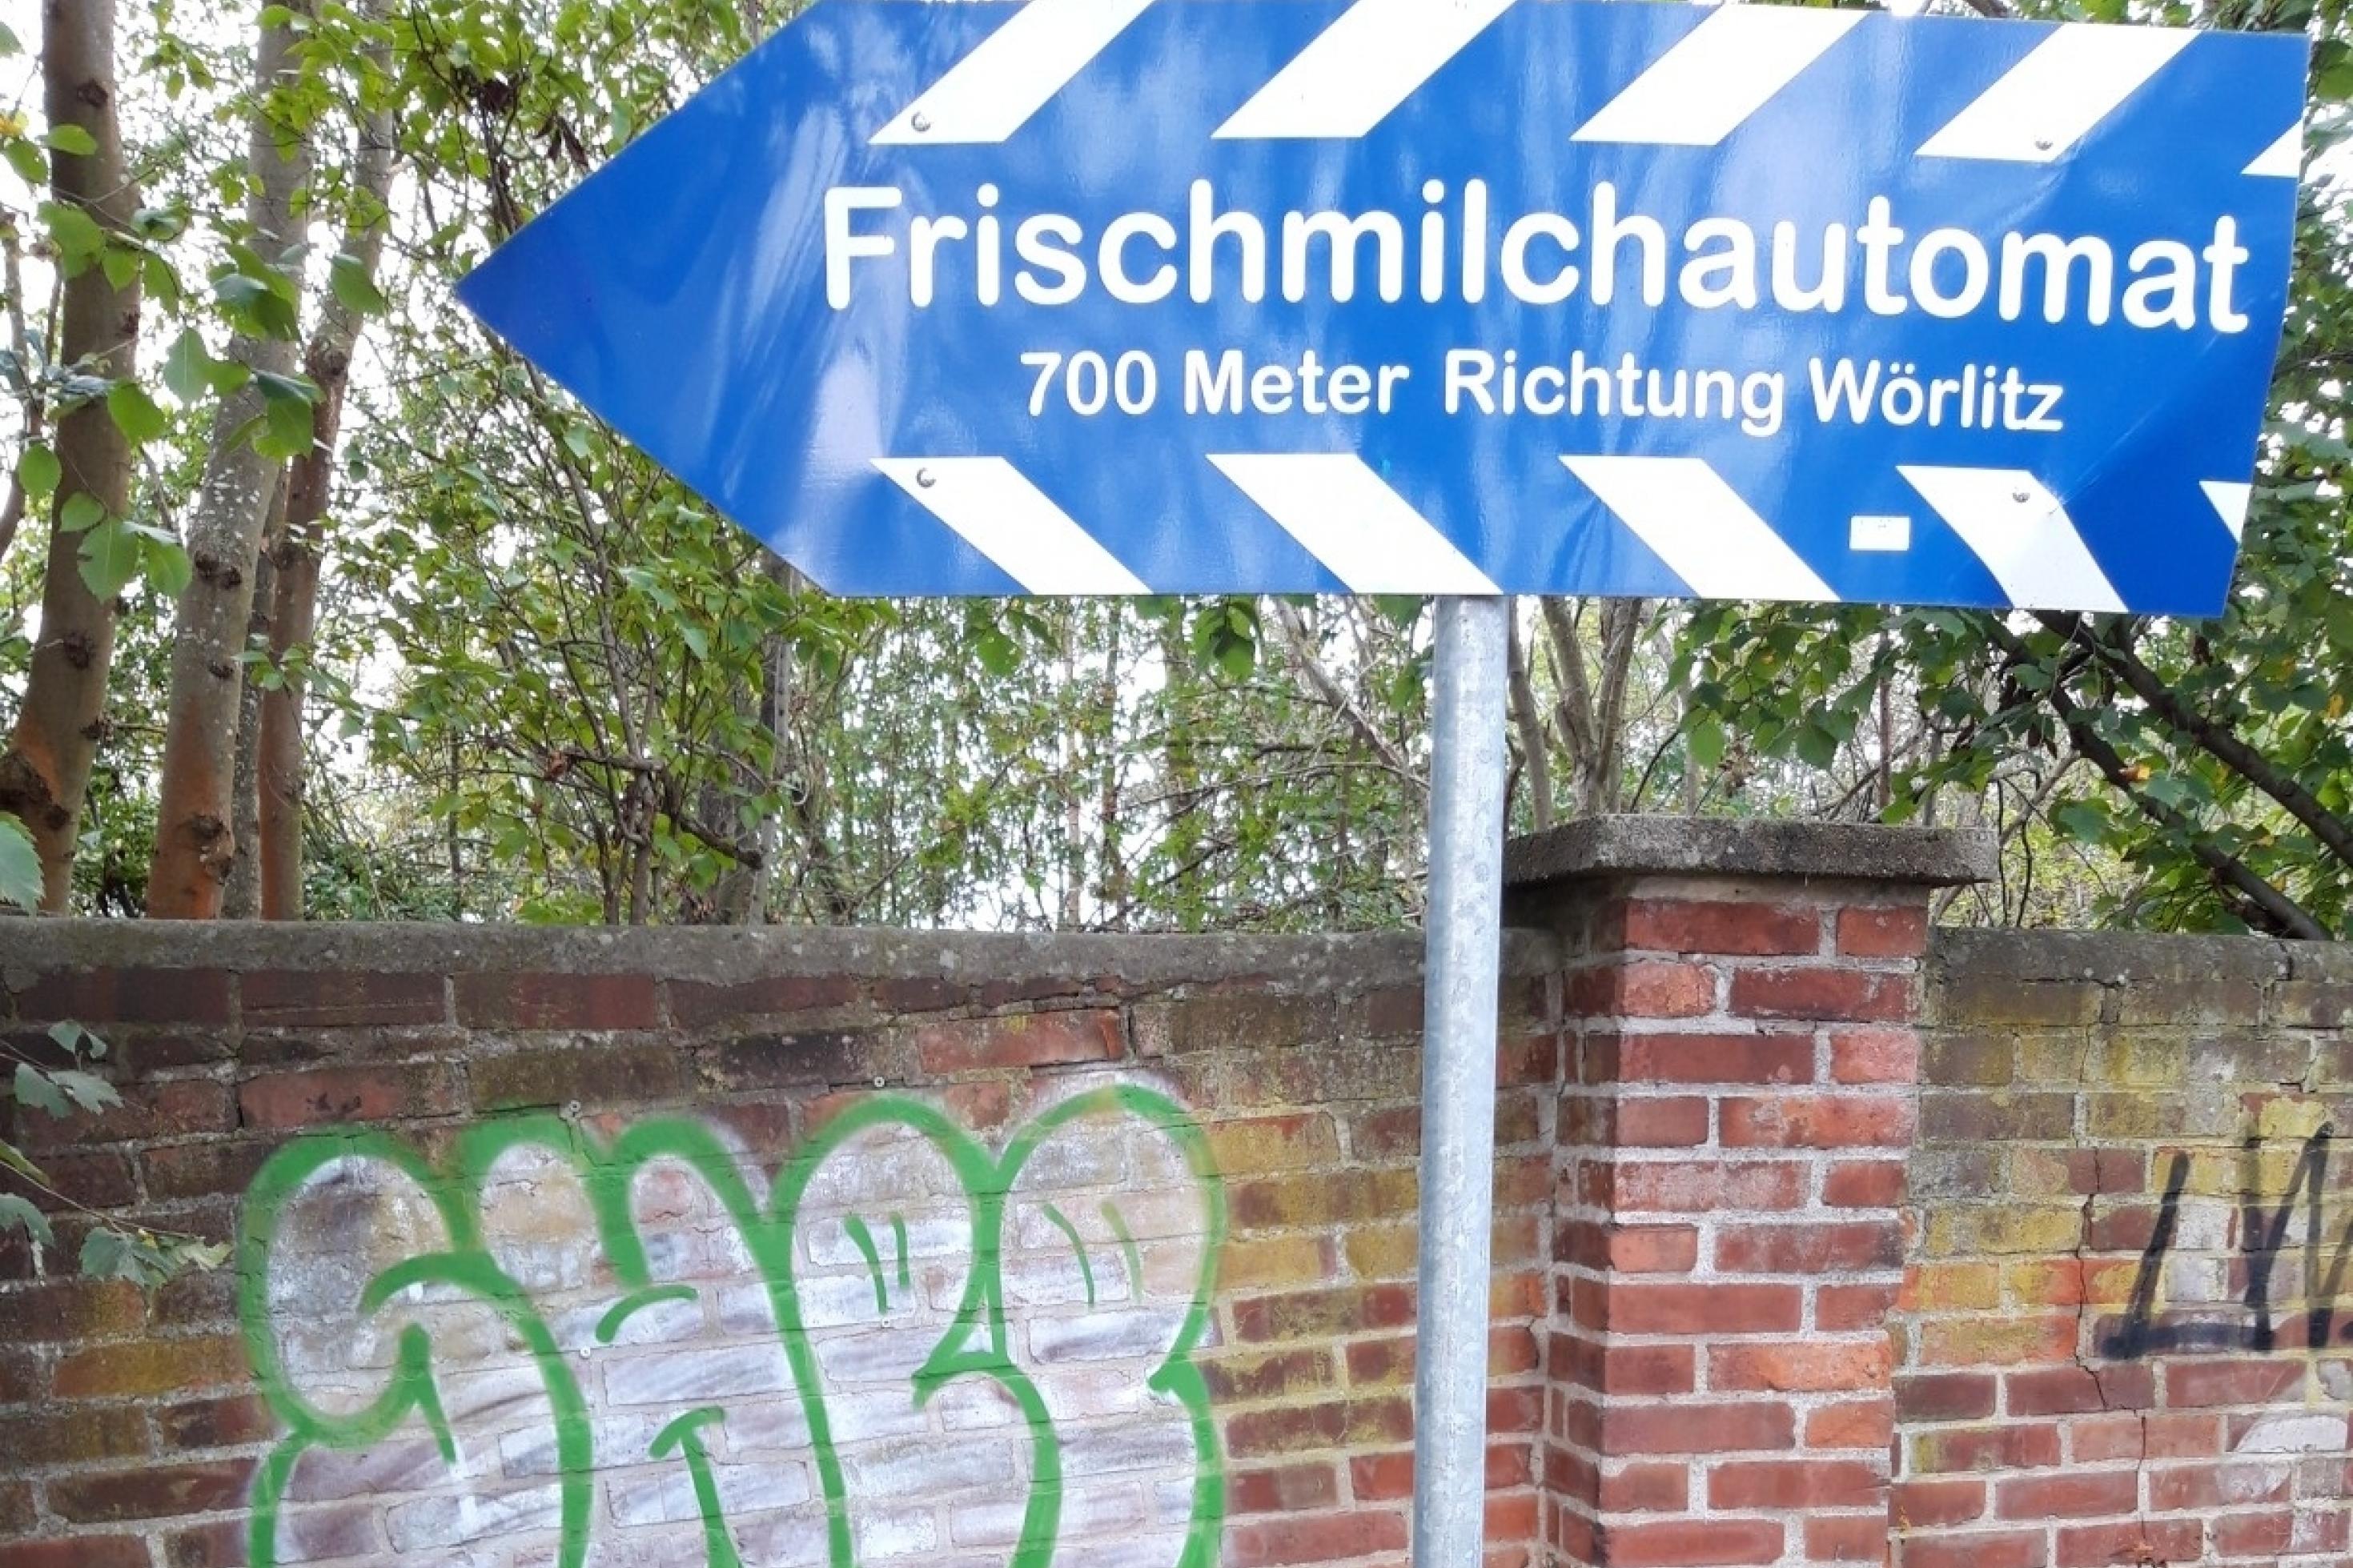 Das Rennrad des RadelndenReporters lehnt am Pfahl eines Hinweisschilds, auf dem zu lesen ist „Frischmilchautomat – 700 Meter Richtung Wörlitz“.